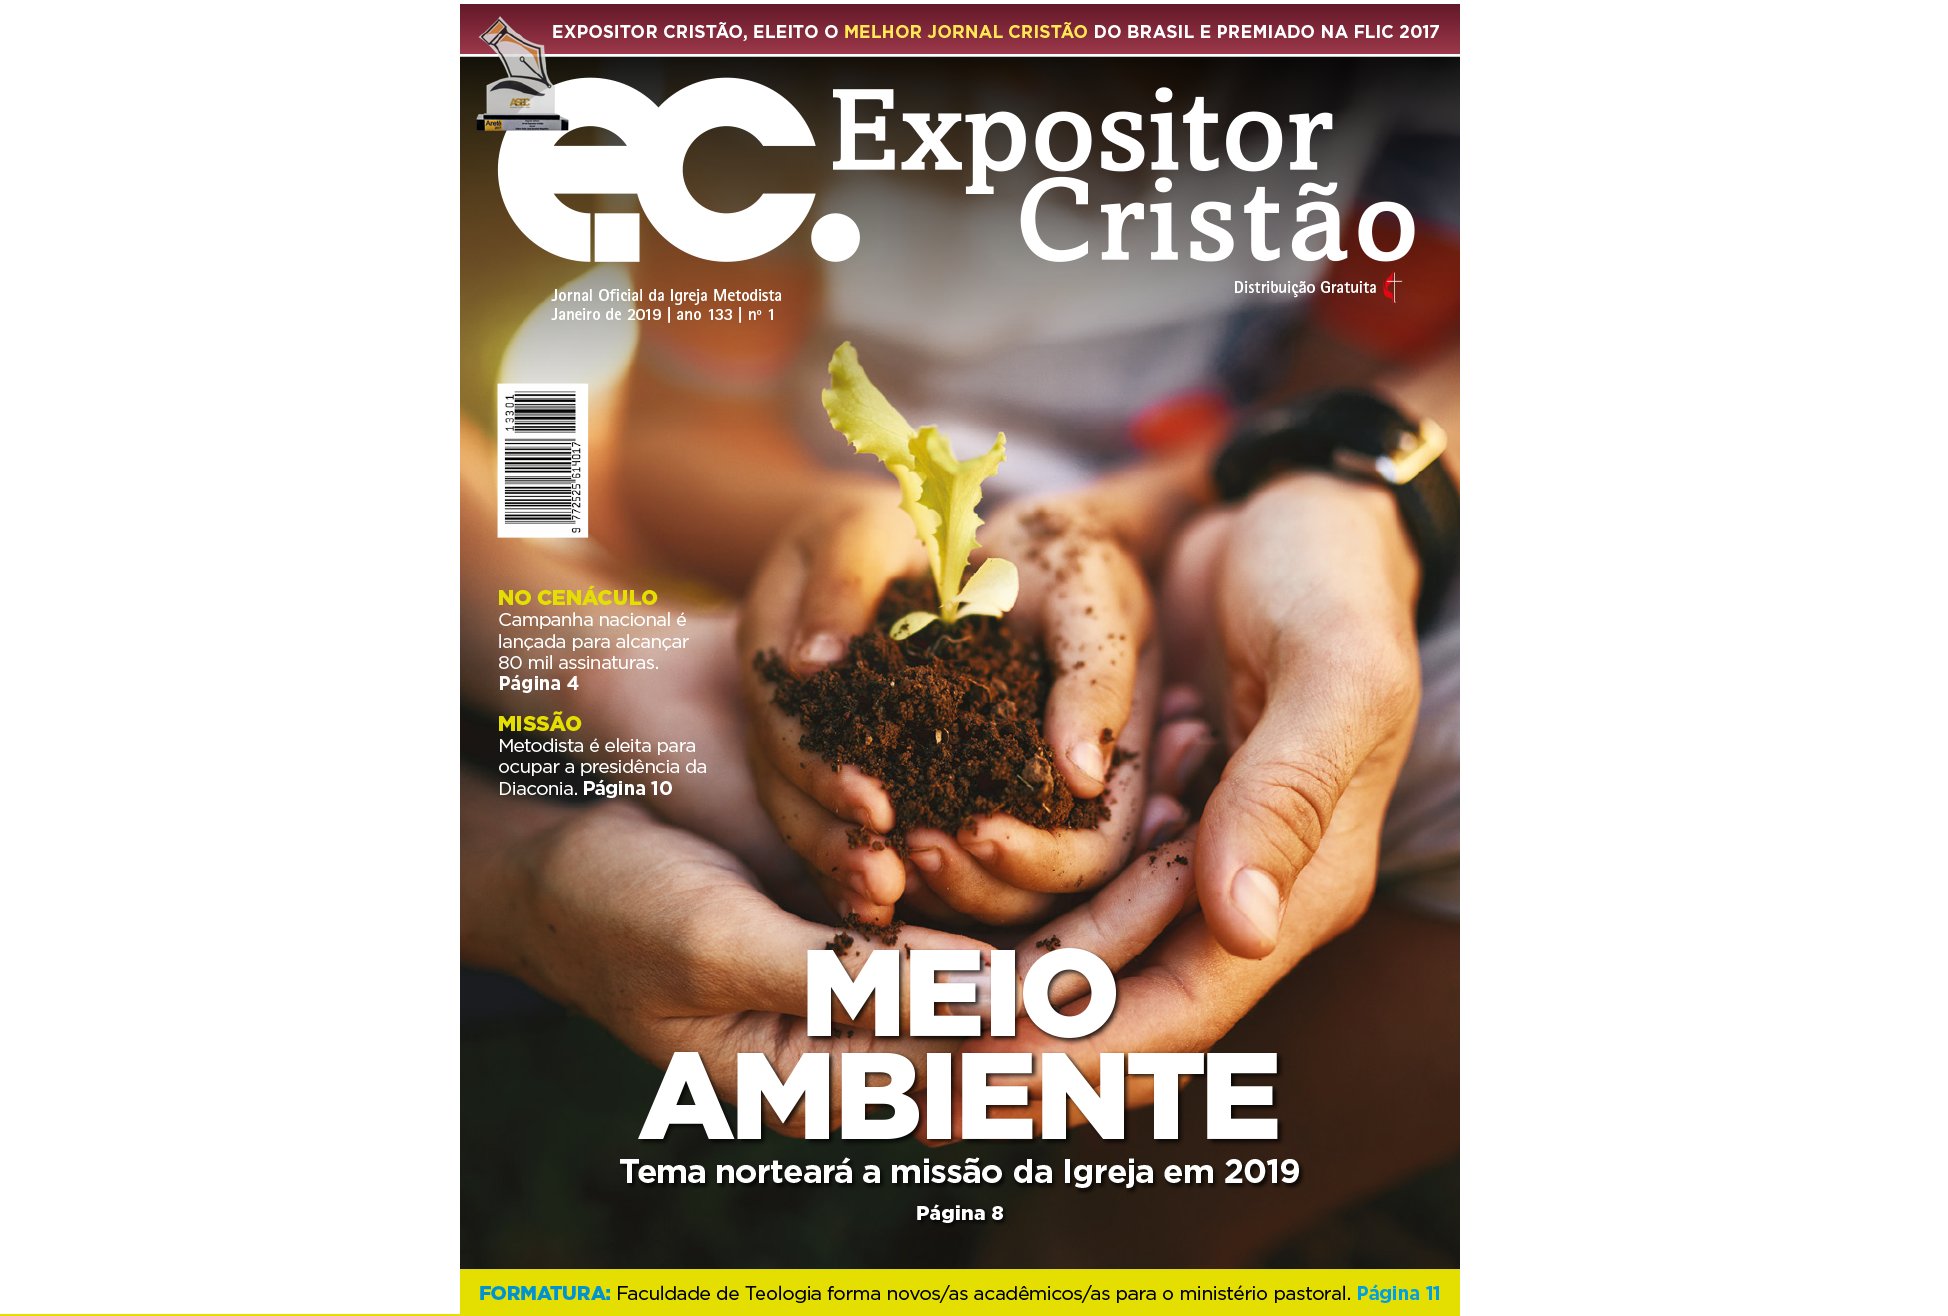 Expositor Cristão: Meio Ambiente é o tema que norteará a Igreja Metodista em 2019